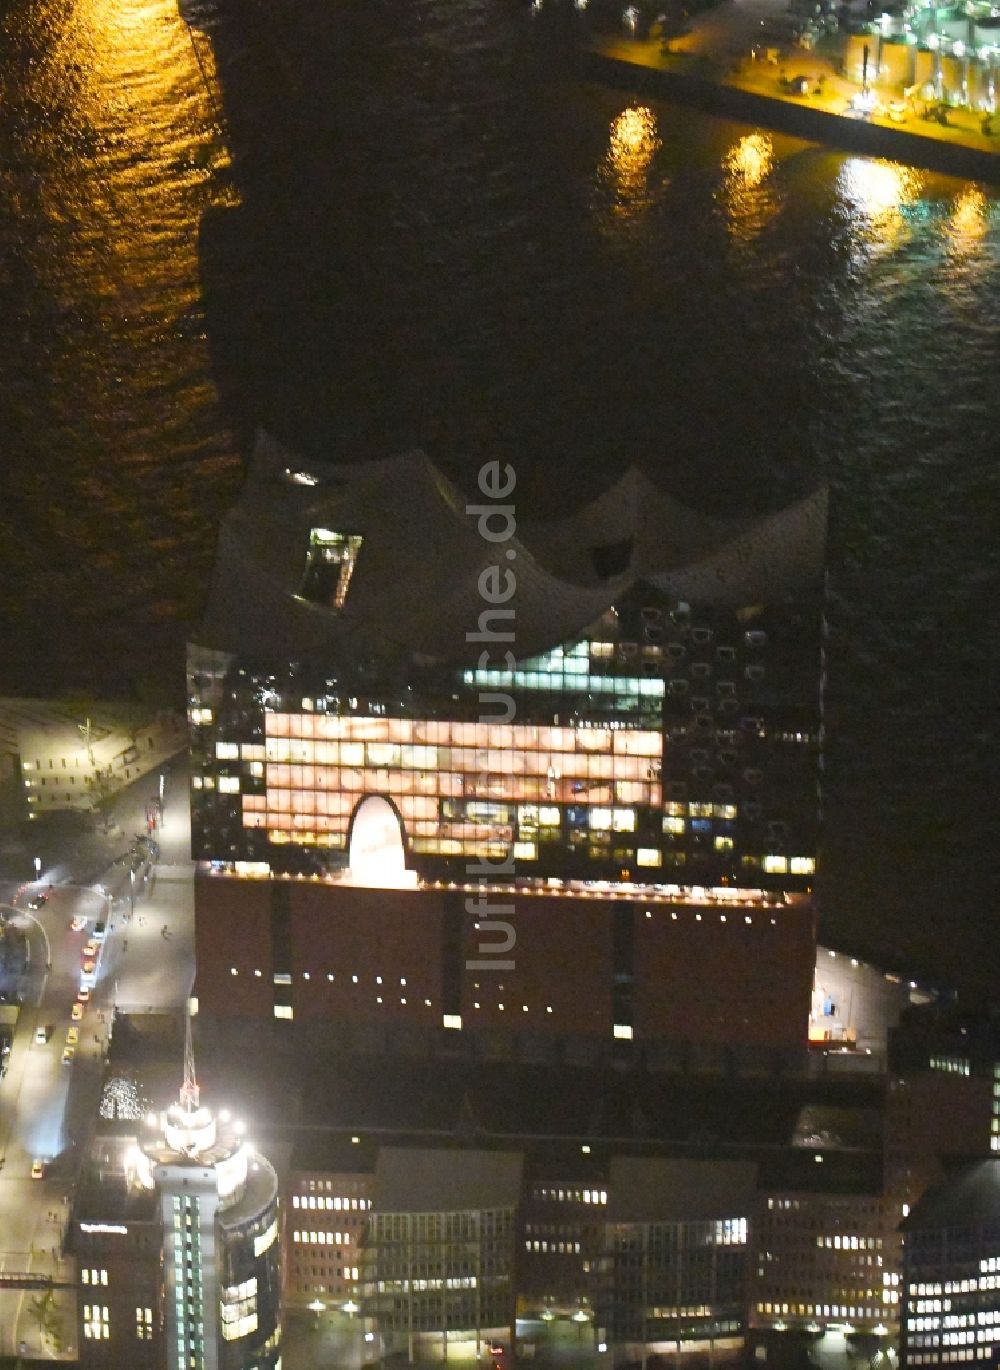 Hamburg bei Nacht von oben - Nachtluftbild Konzerthaus Elbphilharmonie in Hamburg